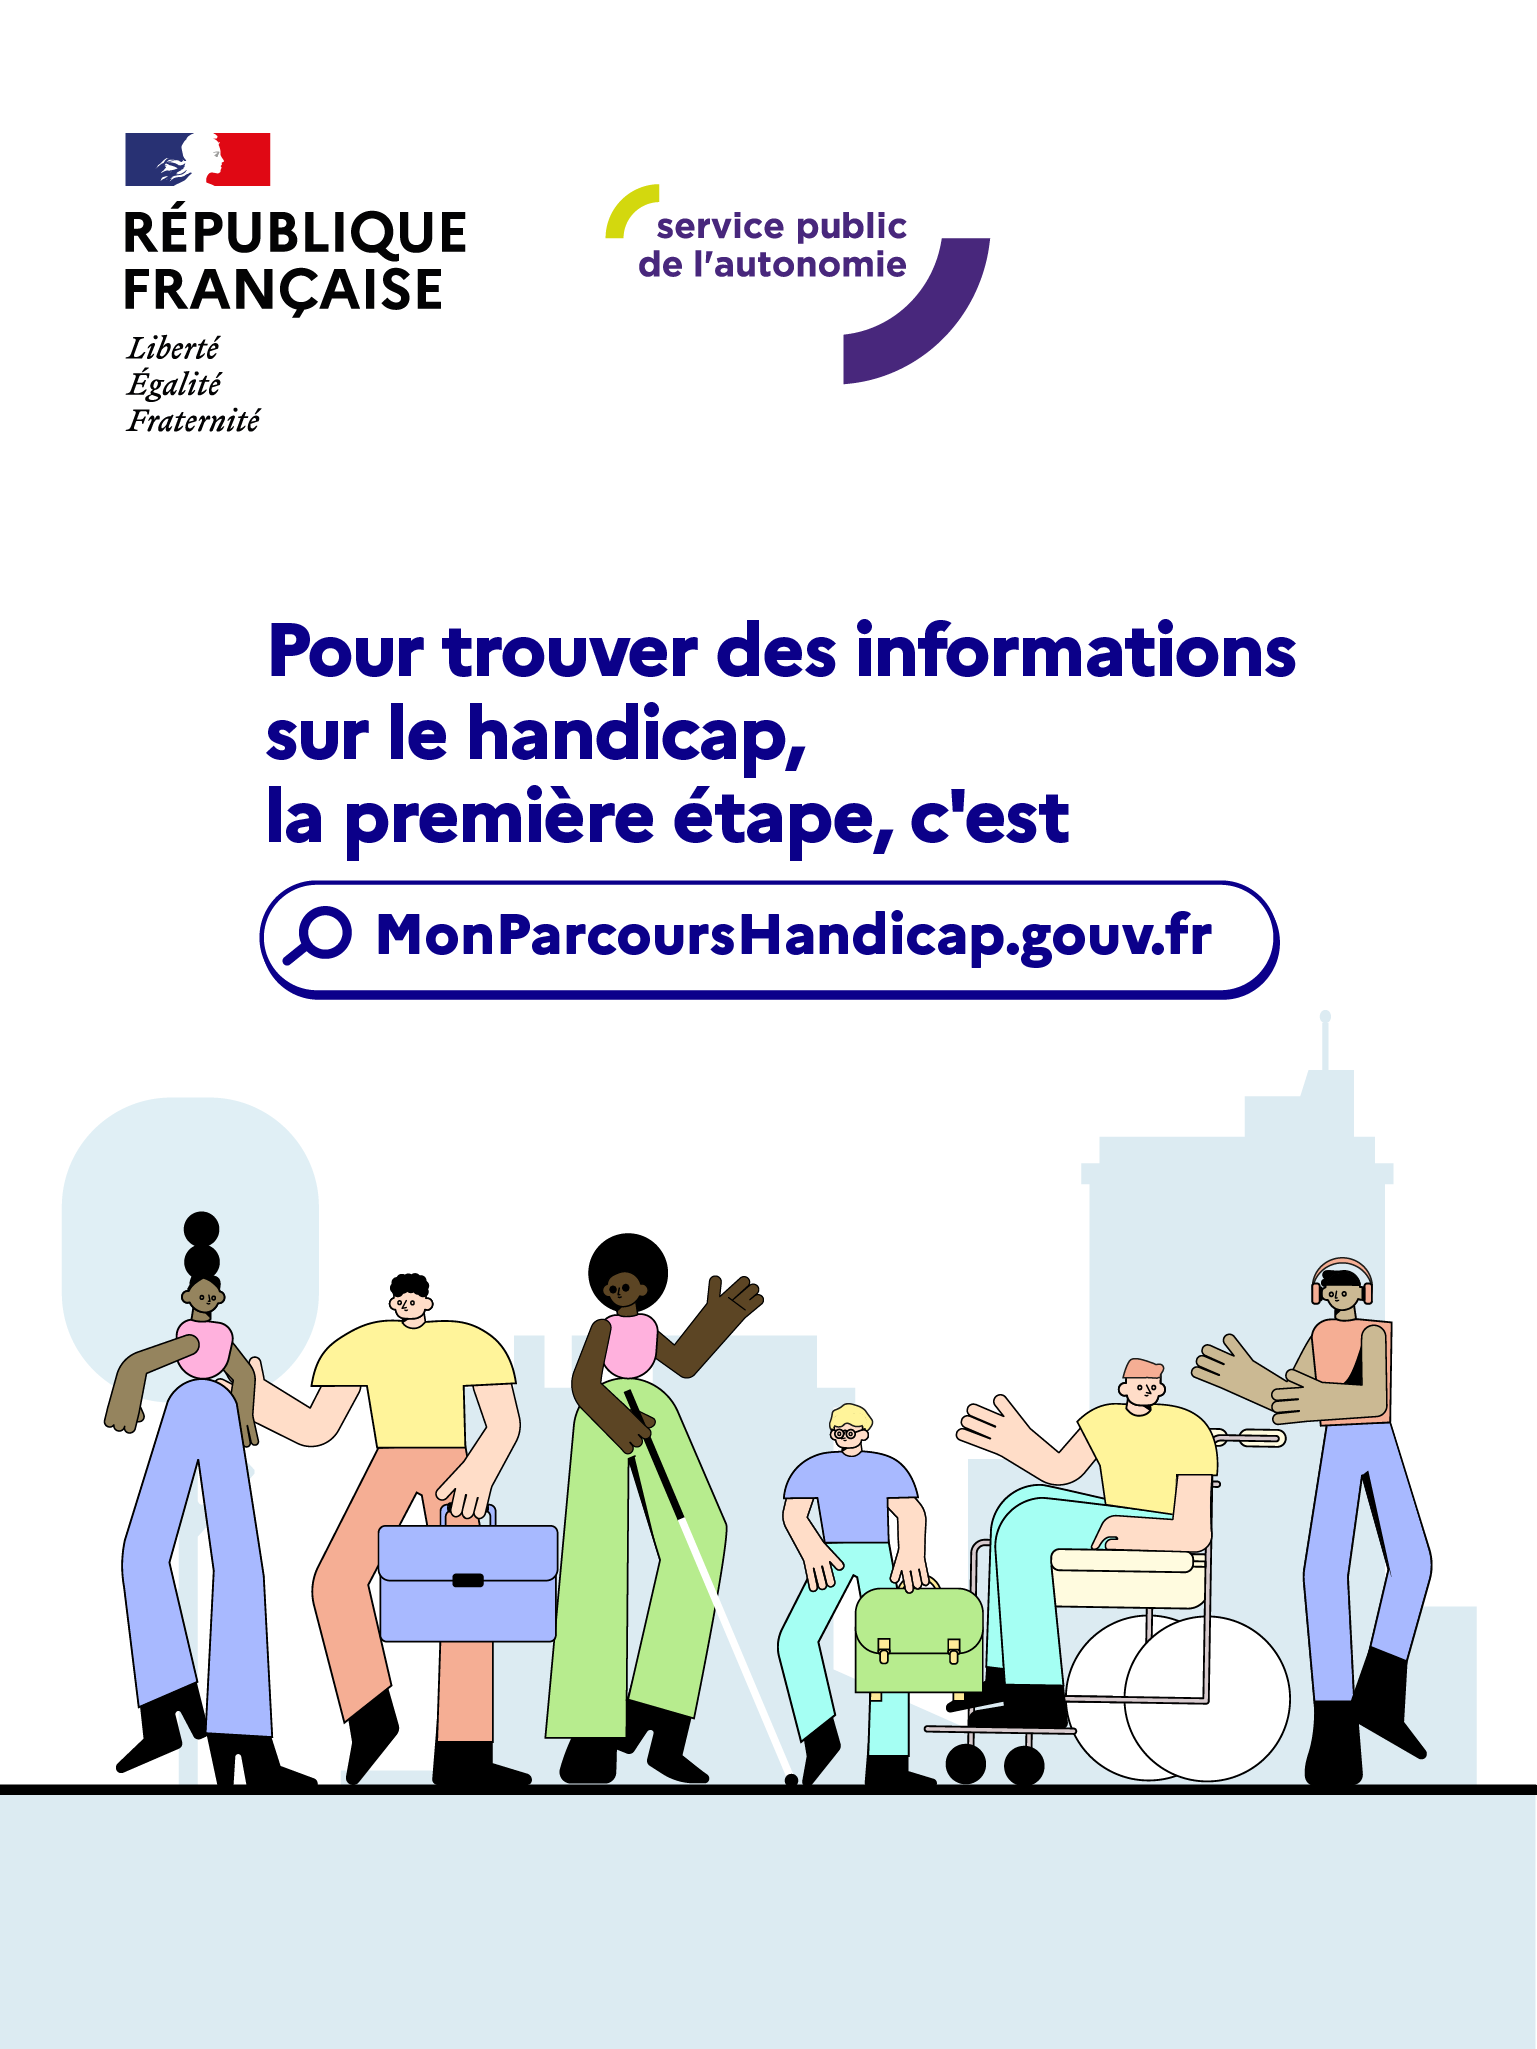 Visuel de la Campagne de communication : la première étape, c'est Mon Parcours Handicap.gouv.fr